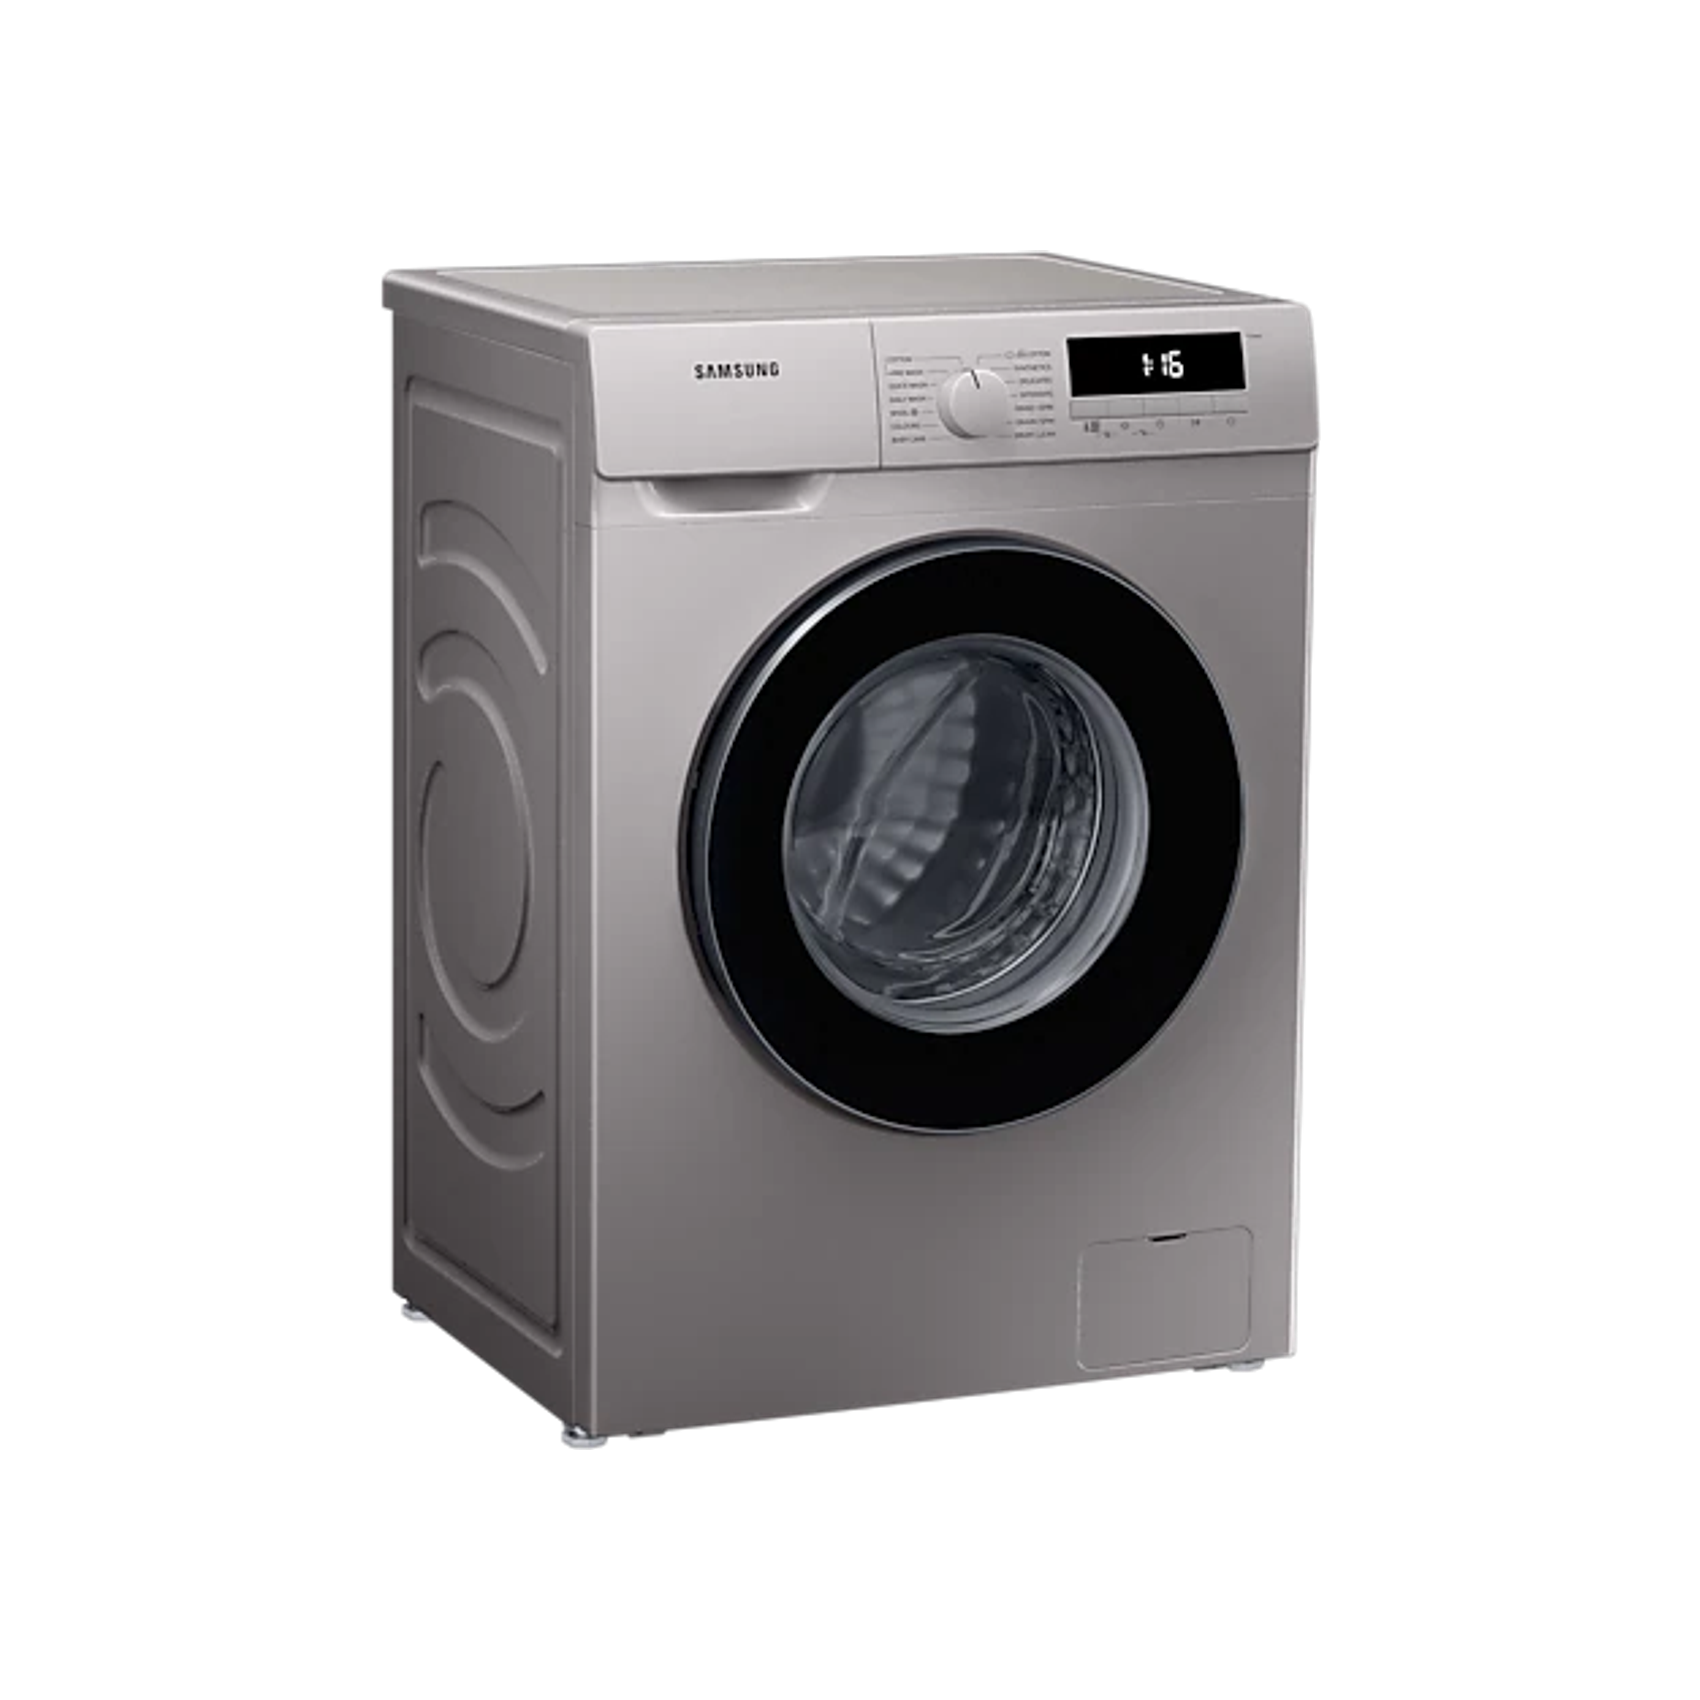 Samsung 8kg Front Loader Washing Machine - Silver (Photo: 3)